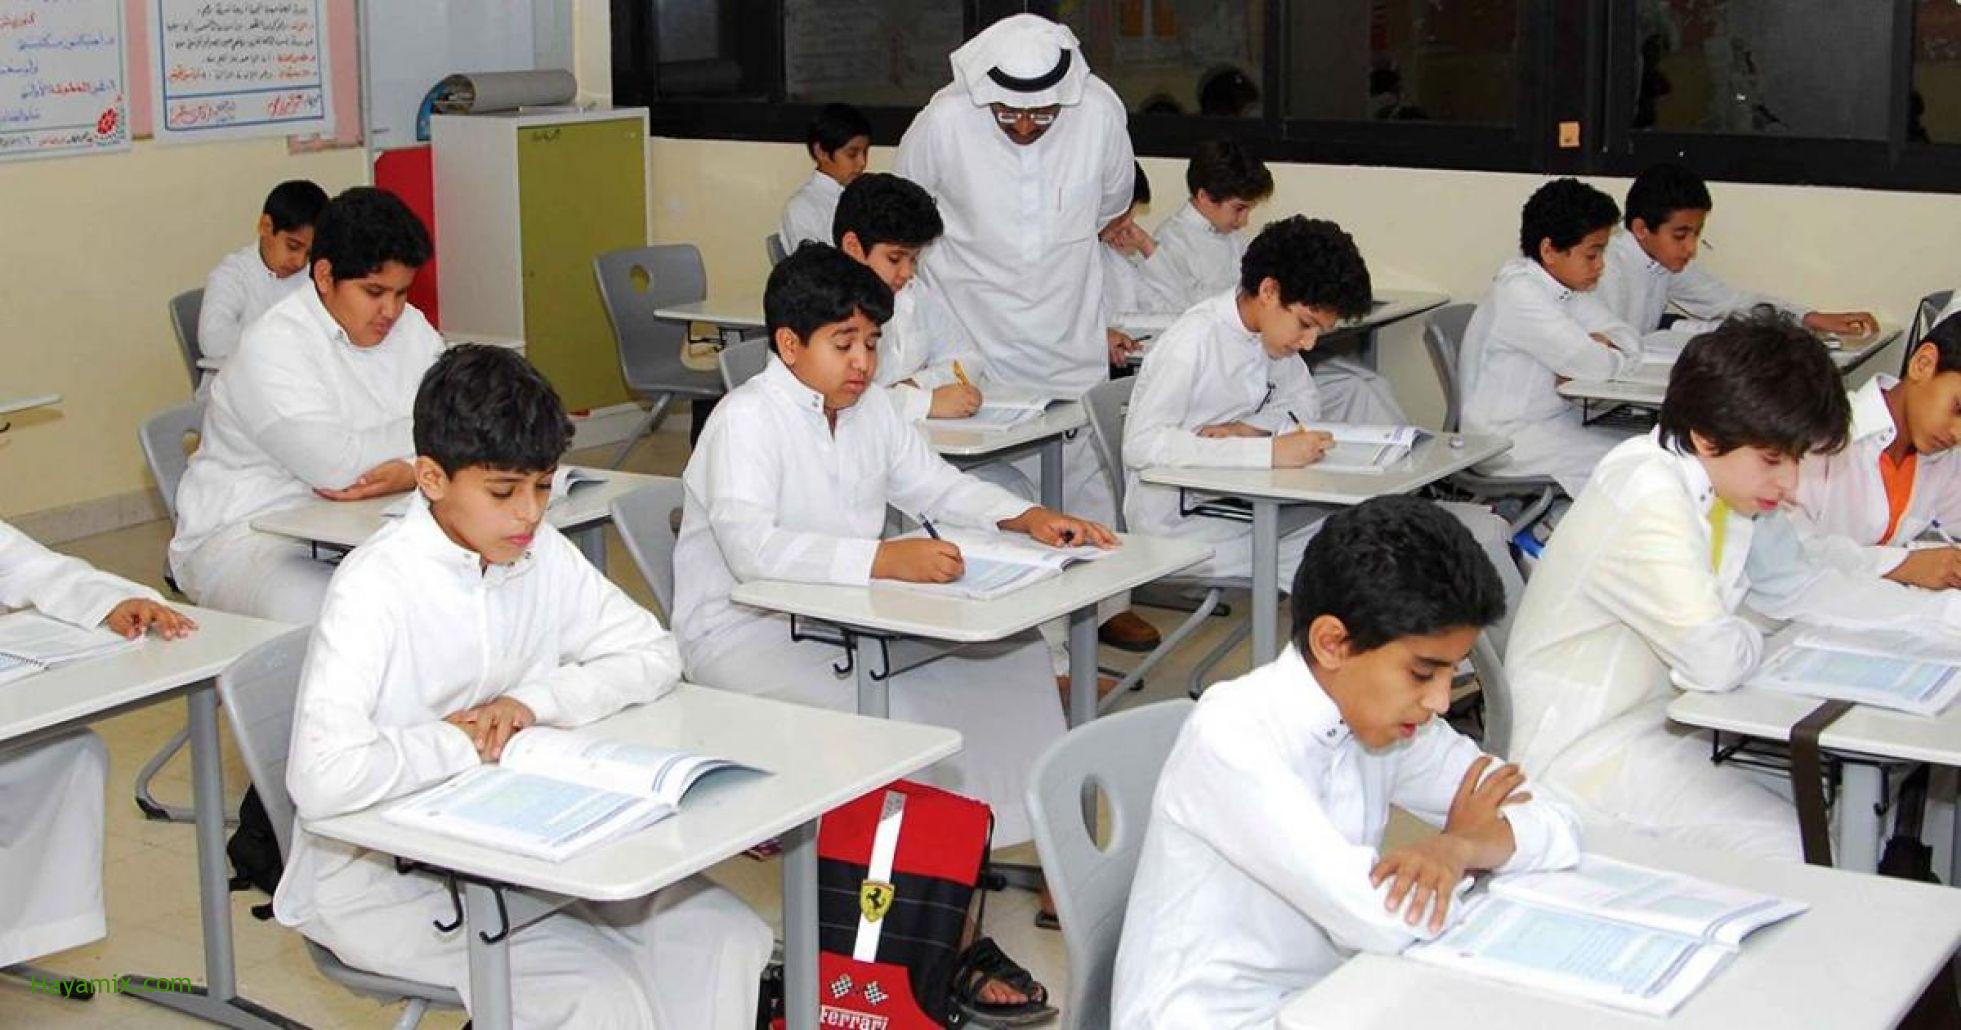 التقويم الدراسي السعودي – موعد بدء الدراسة لمختلف المراحل الدراسية